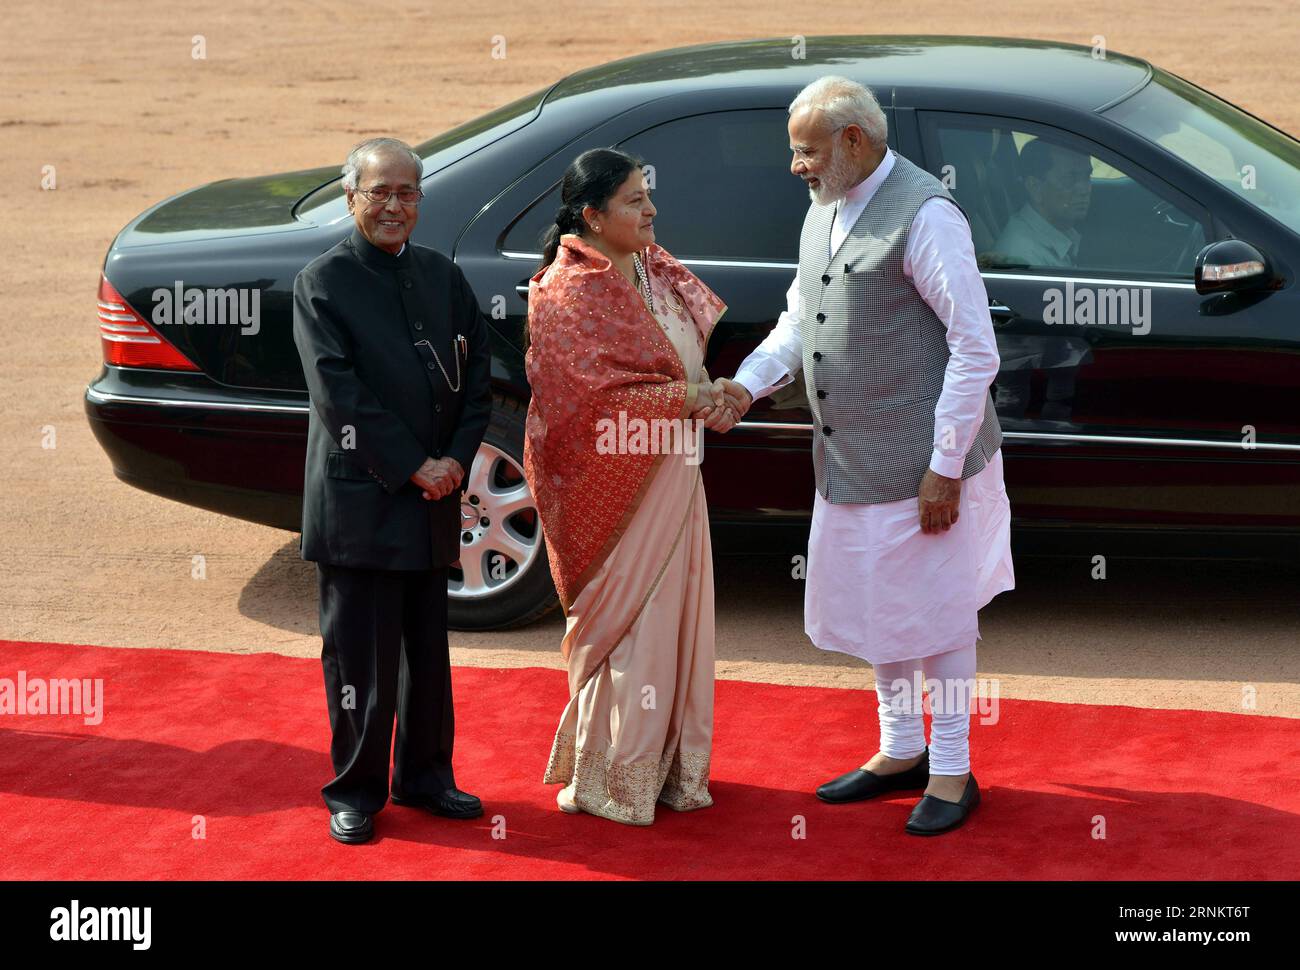 (170418) -- NEW DELHI, 18 avril 2017 () -- le président indien Pranab Mukherjee (G) et le premier ministre Narendra Modi (D) accueillent le président népalais Bidya Devi Bhandari lors d'une réception au palais présidentiel indien à New Delhi, en Inde, le 18 avril 2017. Bidhya Devi Bhandari est en visite de cinq jours en Inde. (/Partha Sarkar) (dtf) INDE-NOUVEAU DELHI-PRÉSIDENT NÉPALAIS-VISITE Xinhua PUBLICATIONxNOTxINxCHN New Delhi avril 18 2017 le président indien Pranab Mukherjee l et les premiers ministres Narendra modes r Bienvenue au président népalais Bidya Devi Bhandari lors d'une réception AU palais présidentiel indien à New de Banque D'Images